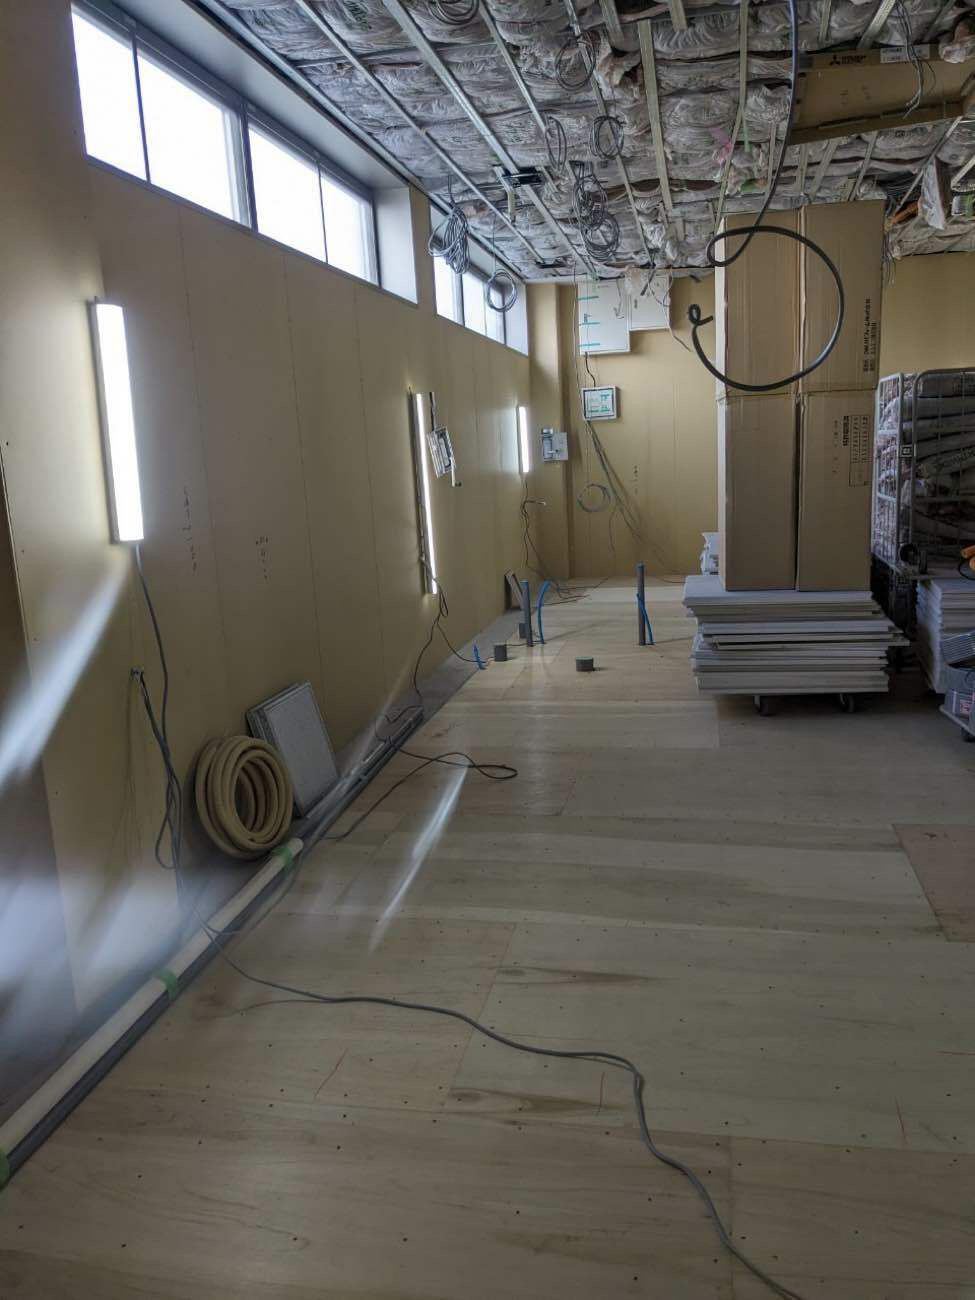 千葉県松戸市にて病院新装に伴う置床工事を行いました。乾式二重床